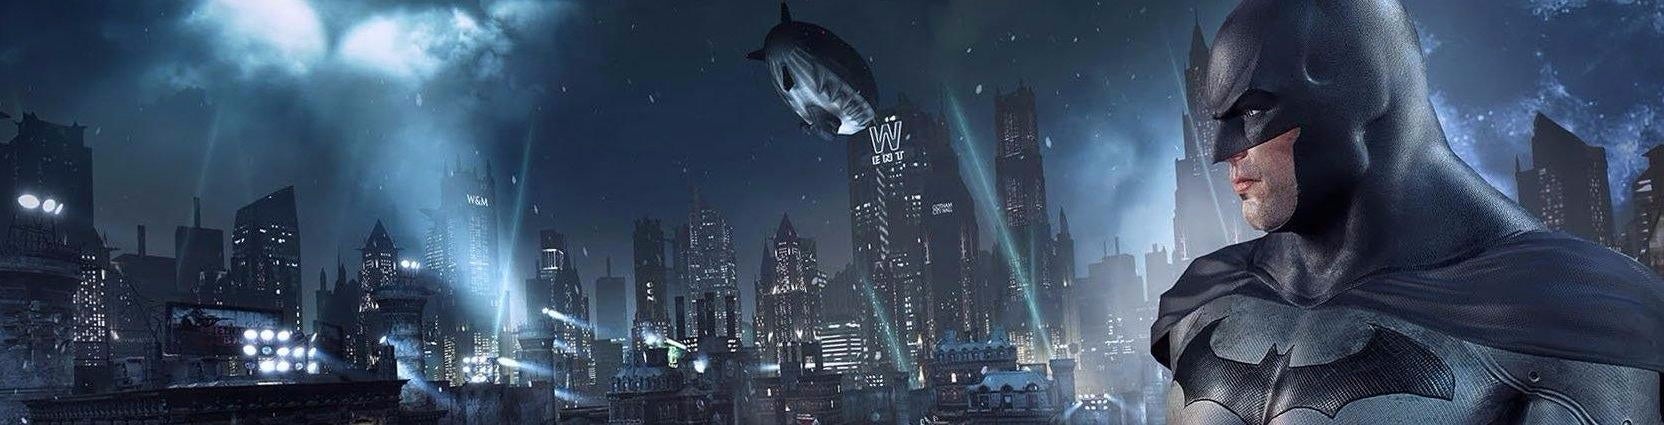 Obrazki dla Batman: Return to Arkham z ciekawym wsparciem dla PS4 Pro